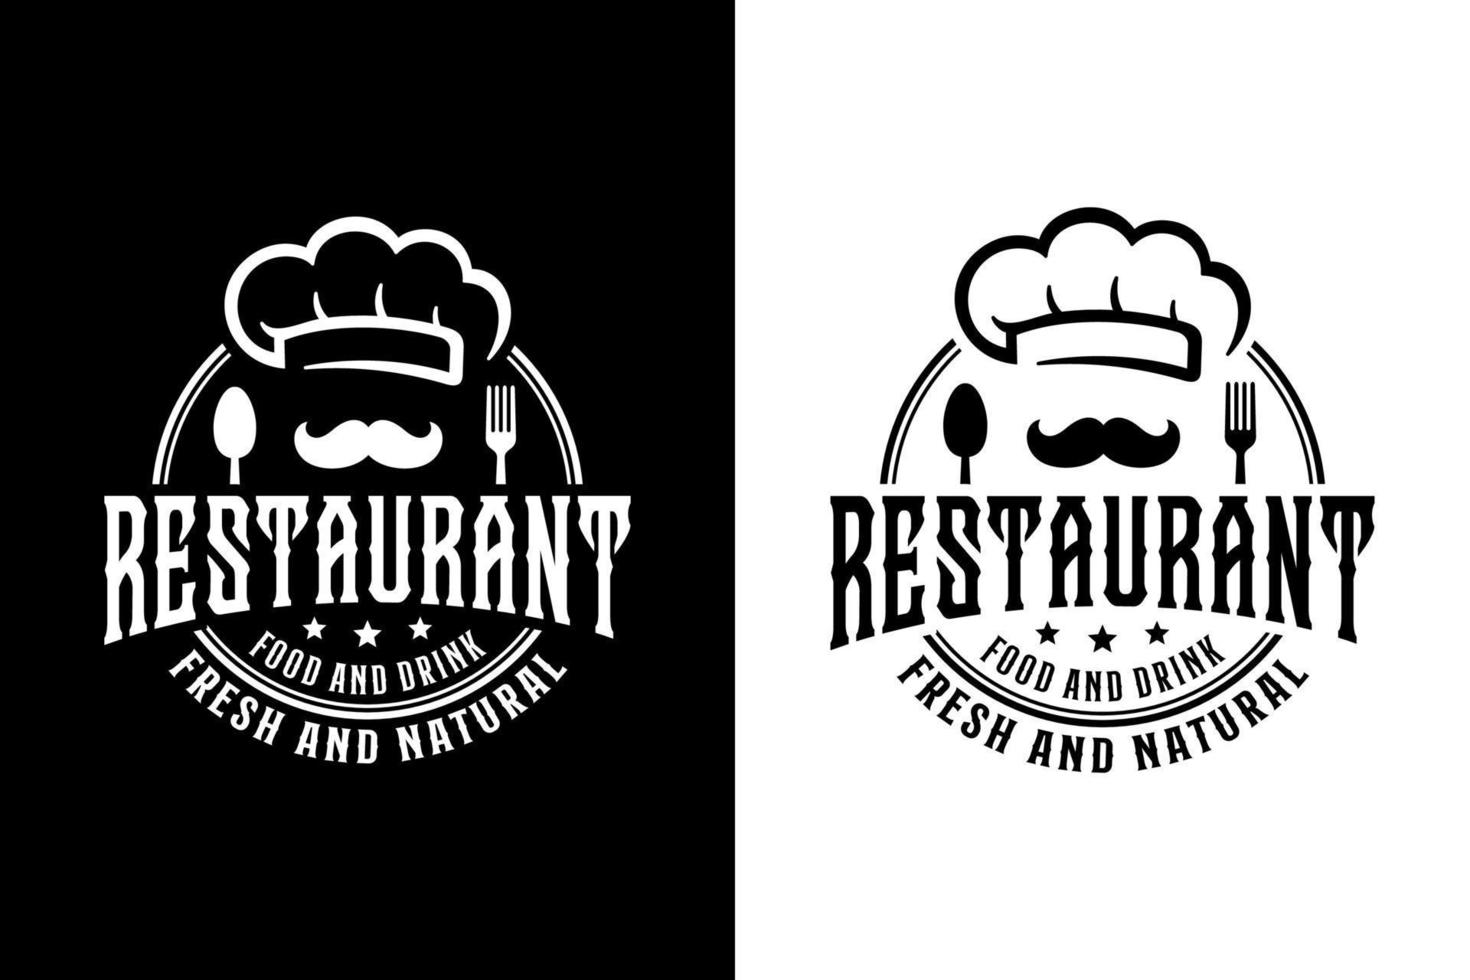 restaurante comida y bebida fresca y natural logotipo de diseño en color blanco y negro vector